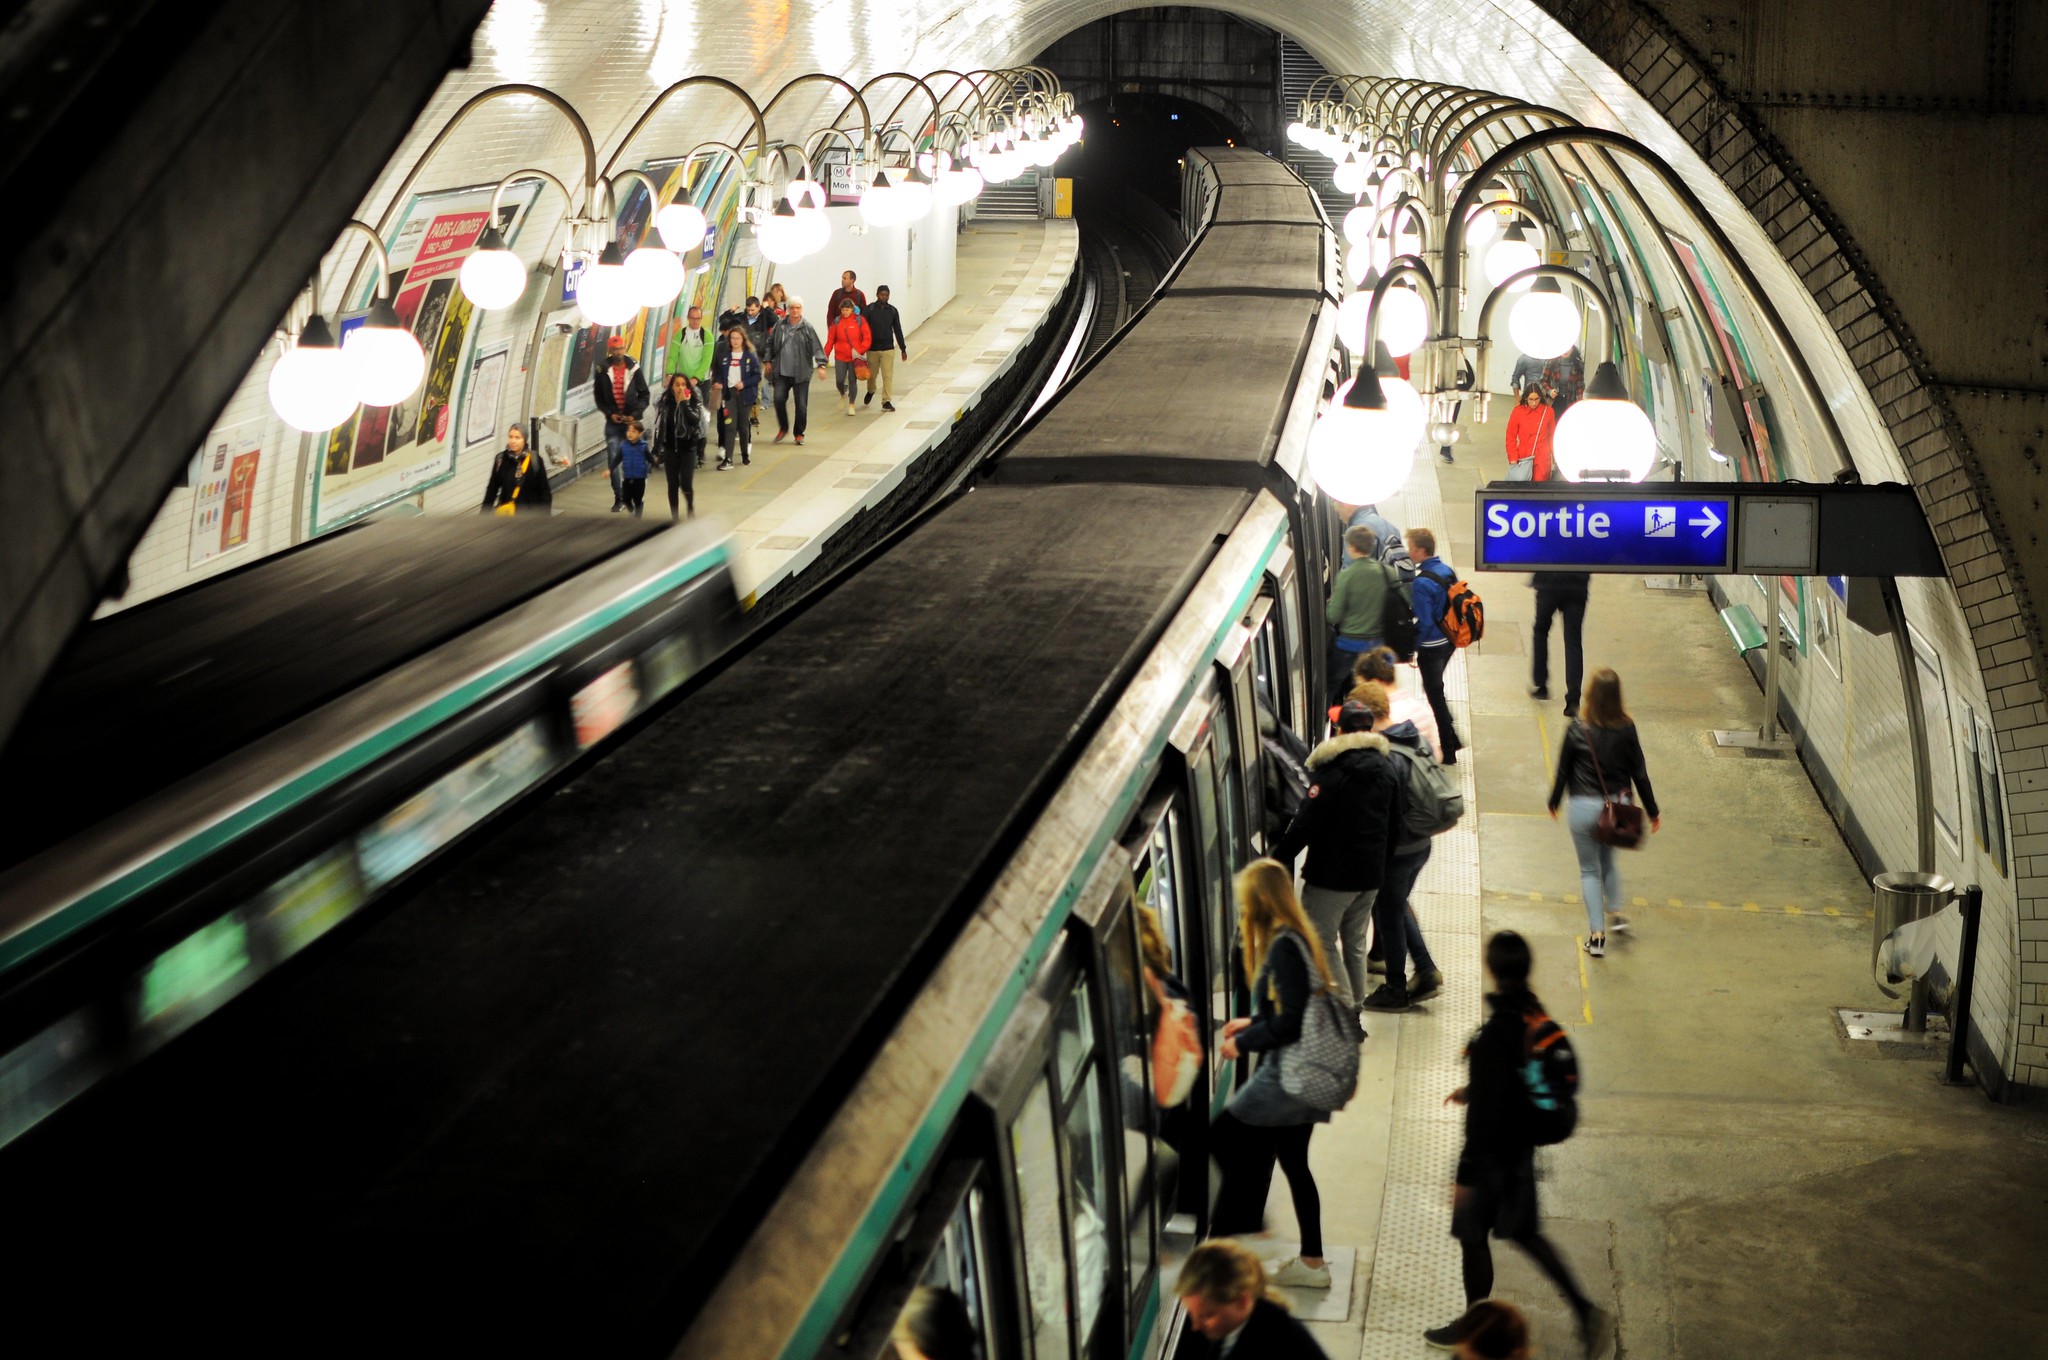 Le métro parisien (station Cité). © Olivier Prt, Flickr